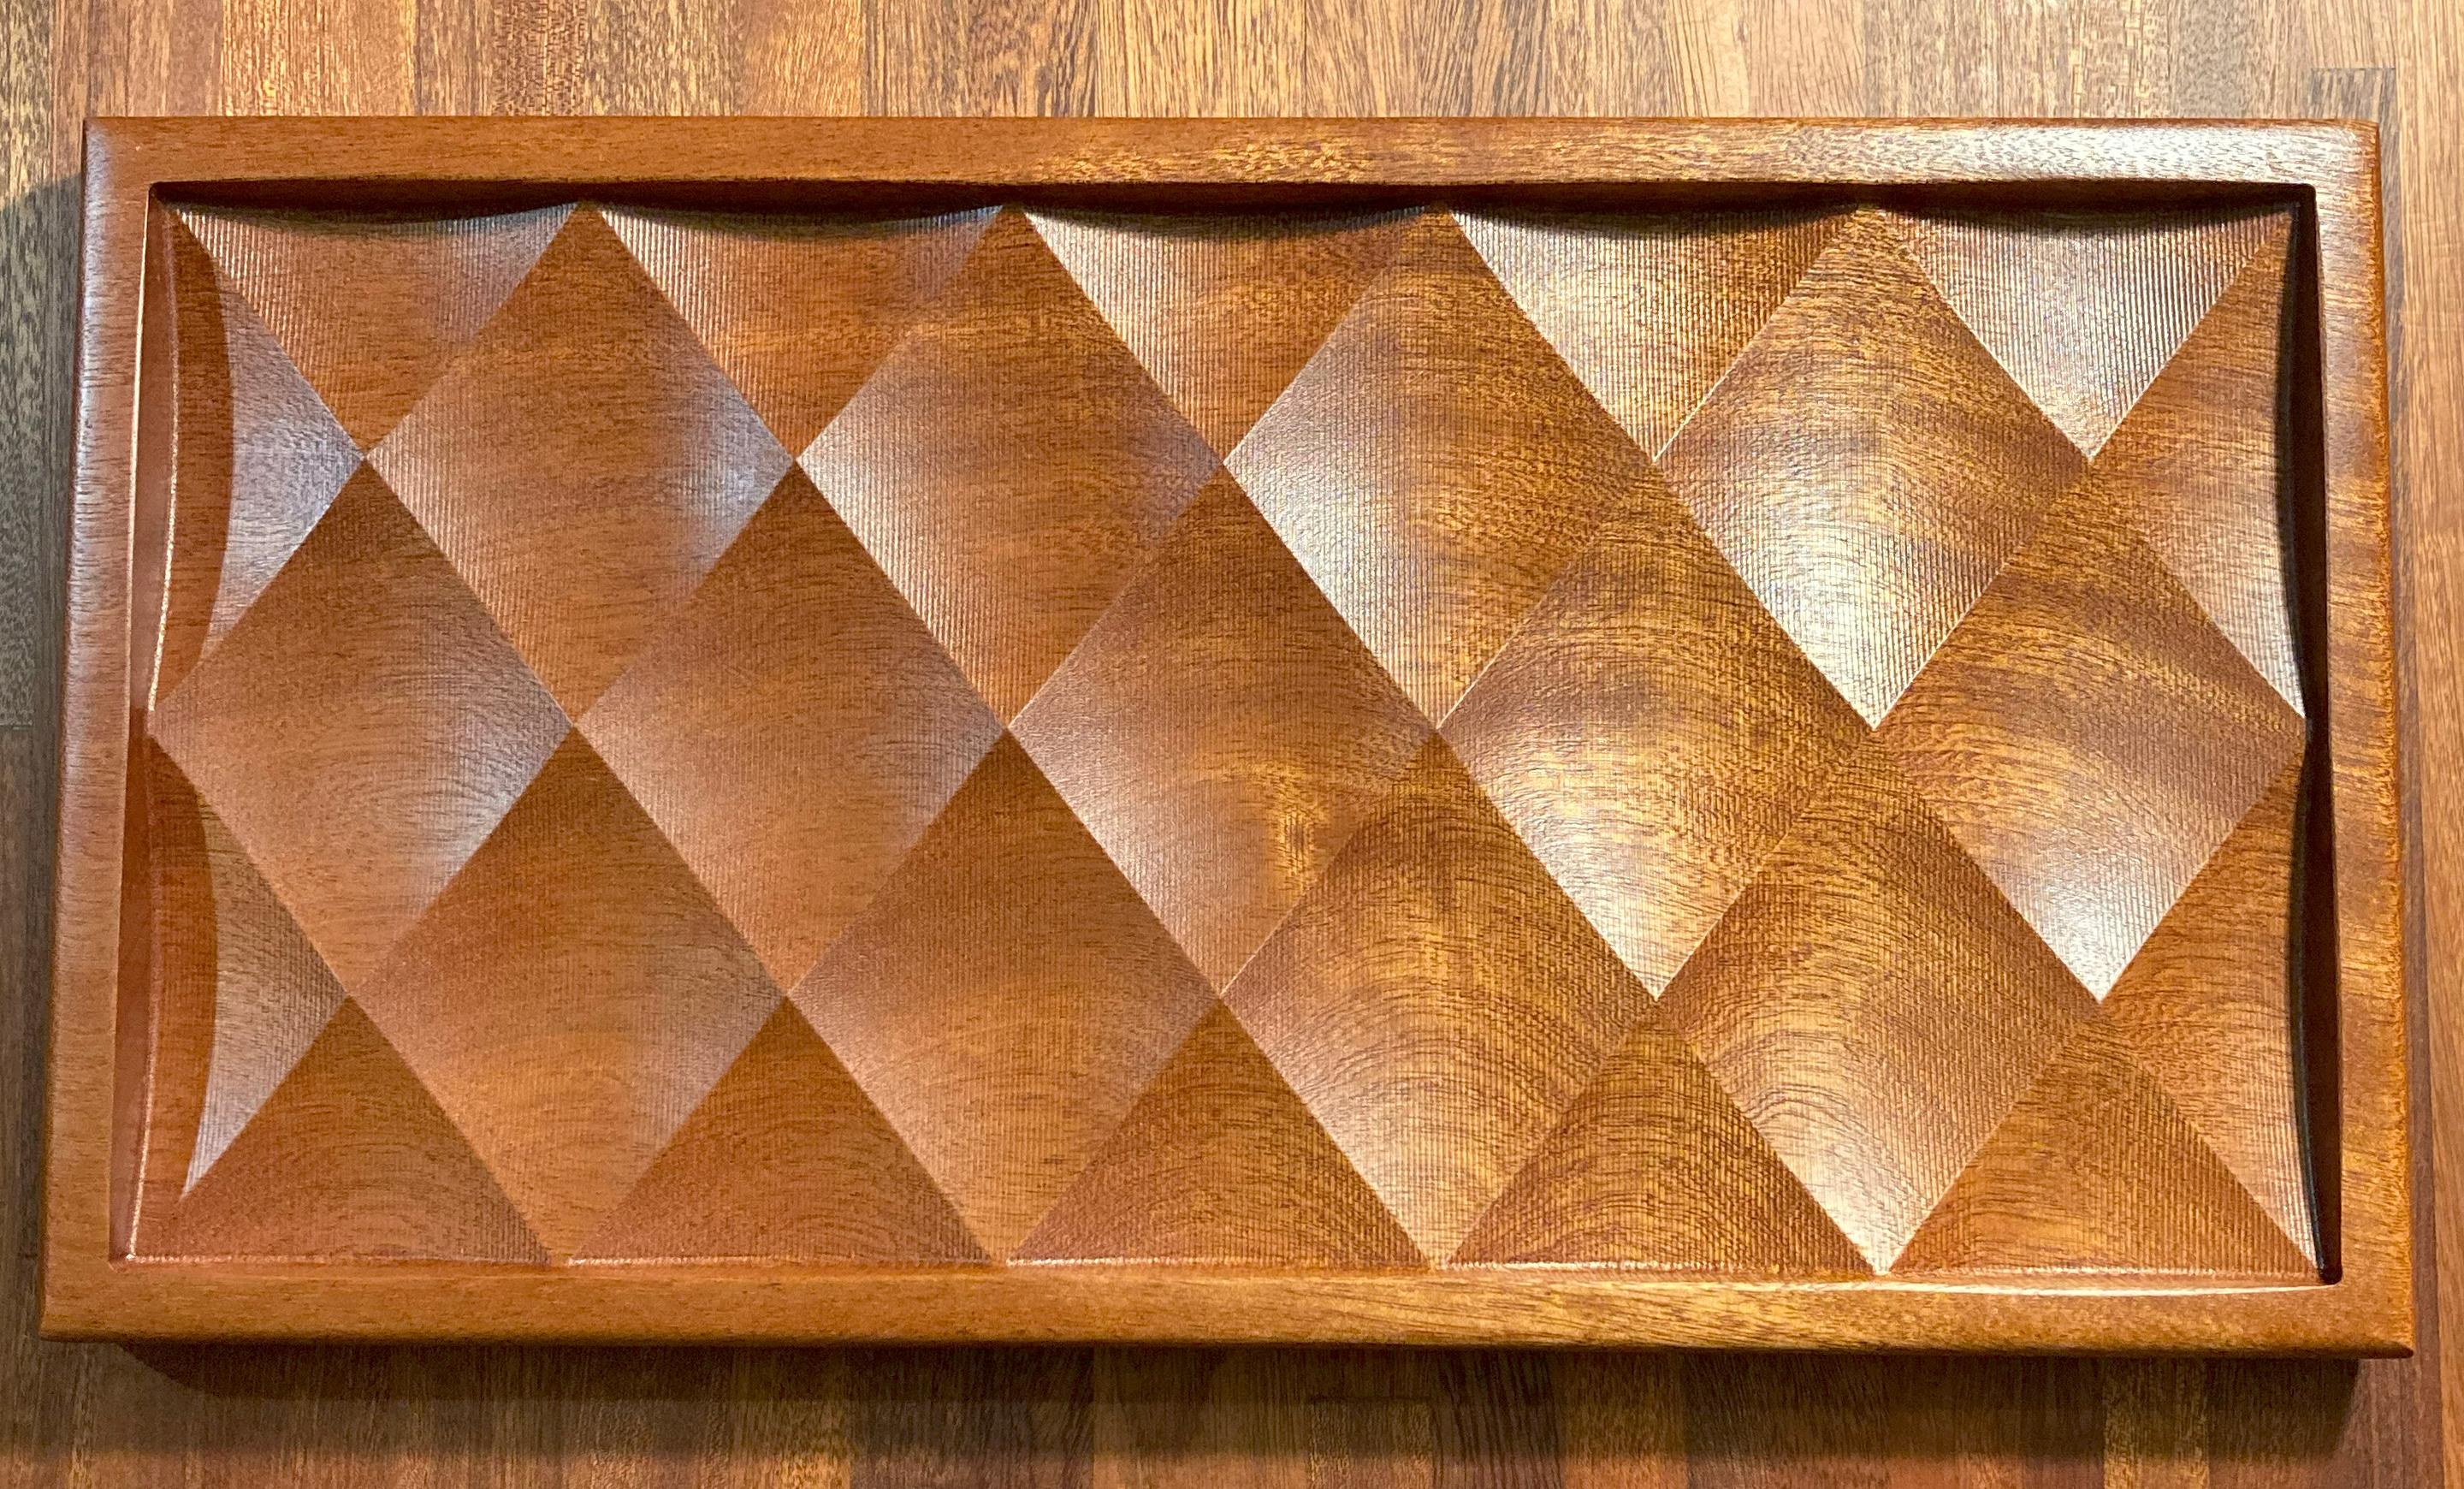 Dieses stilvolle, handwerklich gefertigte Tablett aus Sapele-Holz ist ein Ablagefach für Haus, Büro, Kommode oder Küche.  ein Sammlerstück unter den Einrichtern.  Für Zuhause, das Büro, die Kommode oder die Küche aus massivem, gold-rotem